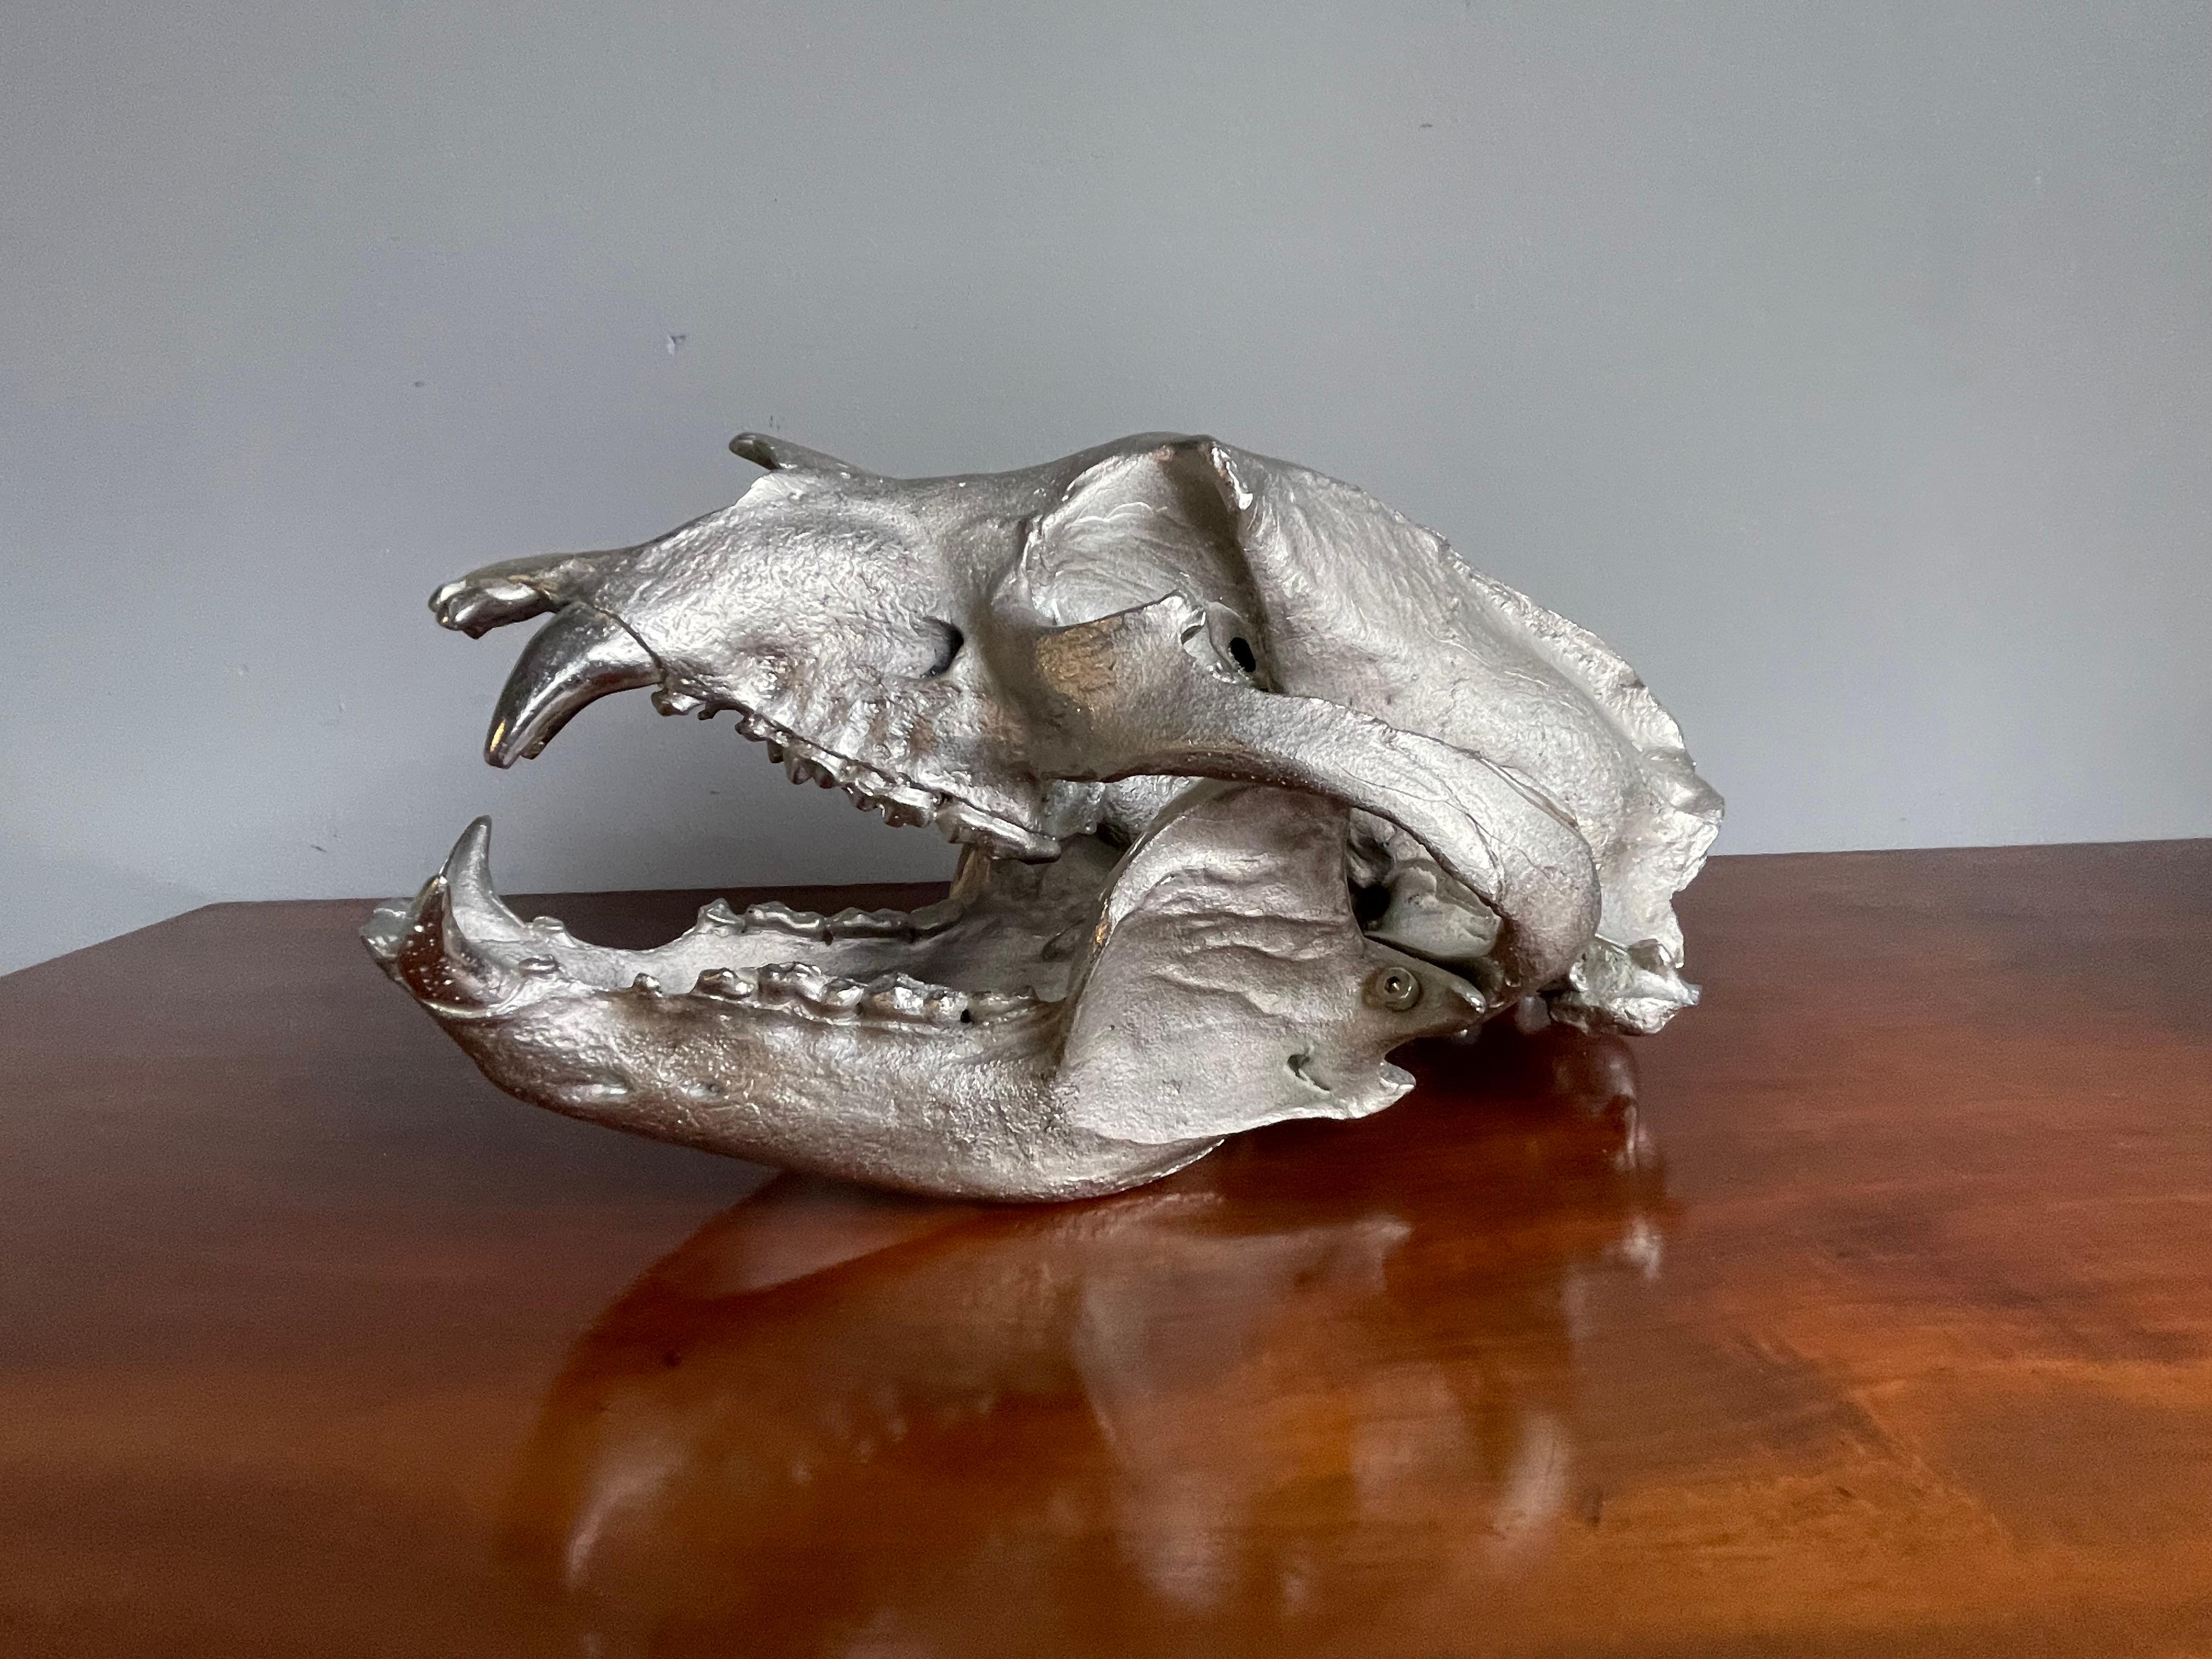 Réplique exacte d'un crâne d'ours noir, coulée en bronze.

Ce crâne en bronze, cool et fabriqué à la main, est la réplique exacte d'un crâne d'ours noir. Moins de 20 ont été fabriqués et il y a environ cinq ans, ils sont entrés en notre possession